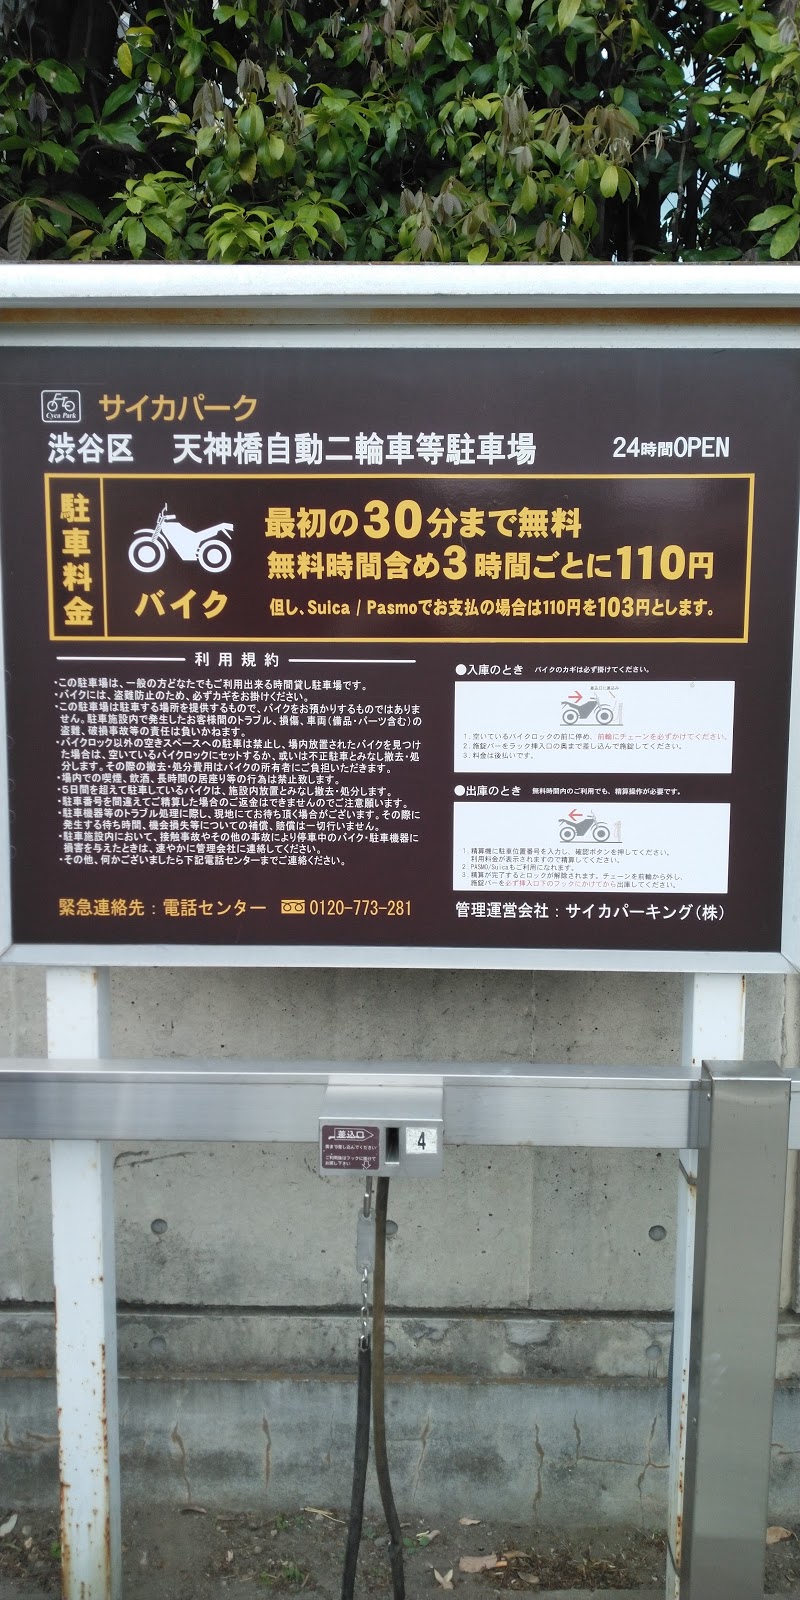 サイカパーク 渋谷区 天神橋自動二輪車等駐車場